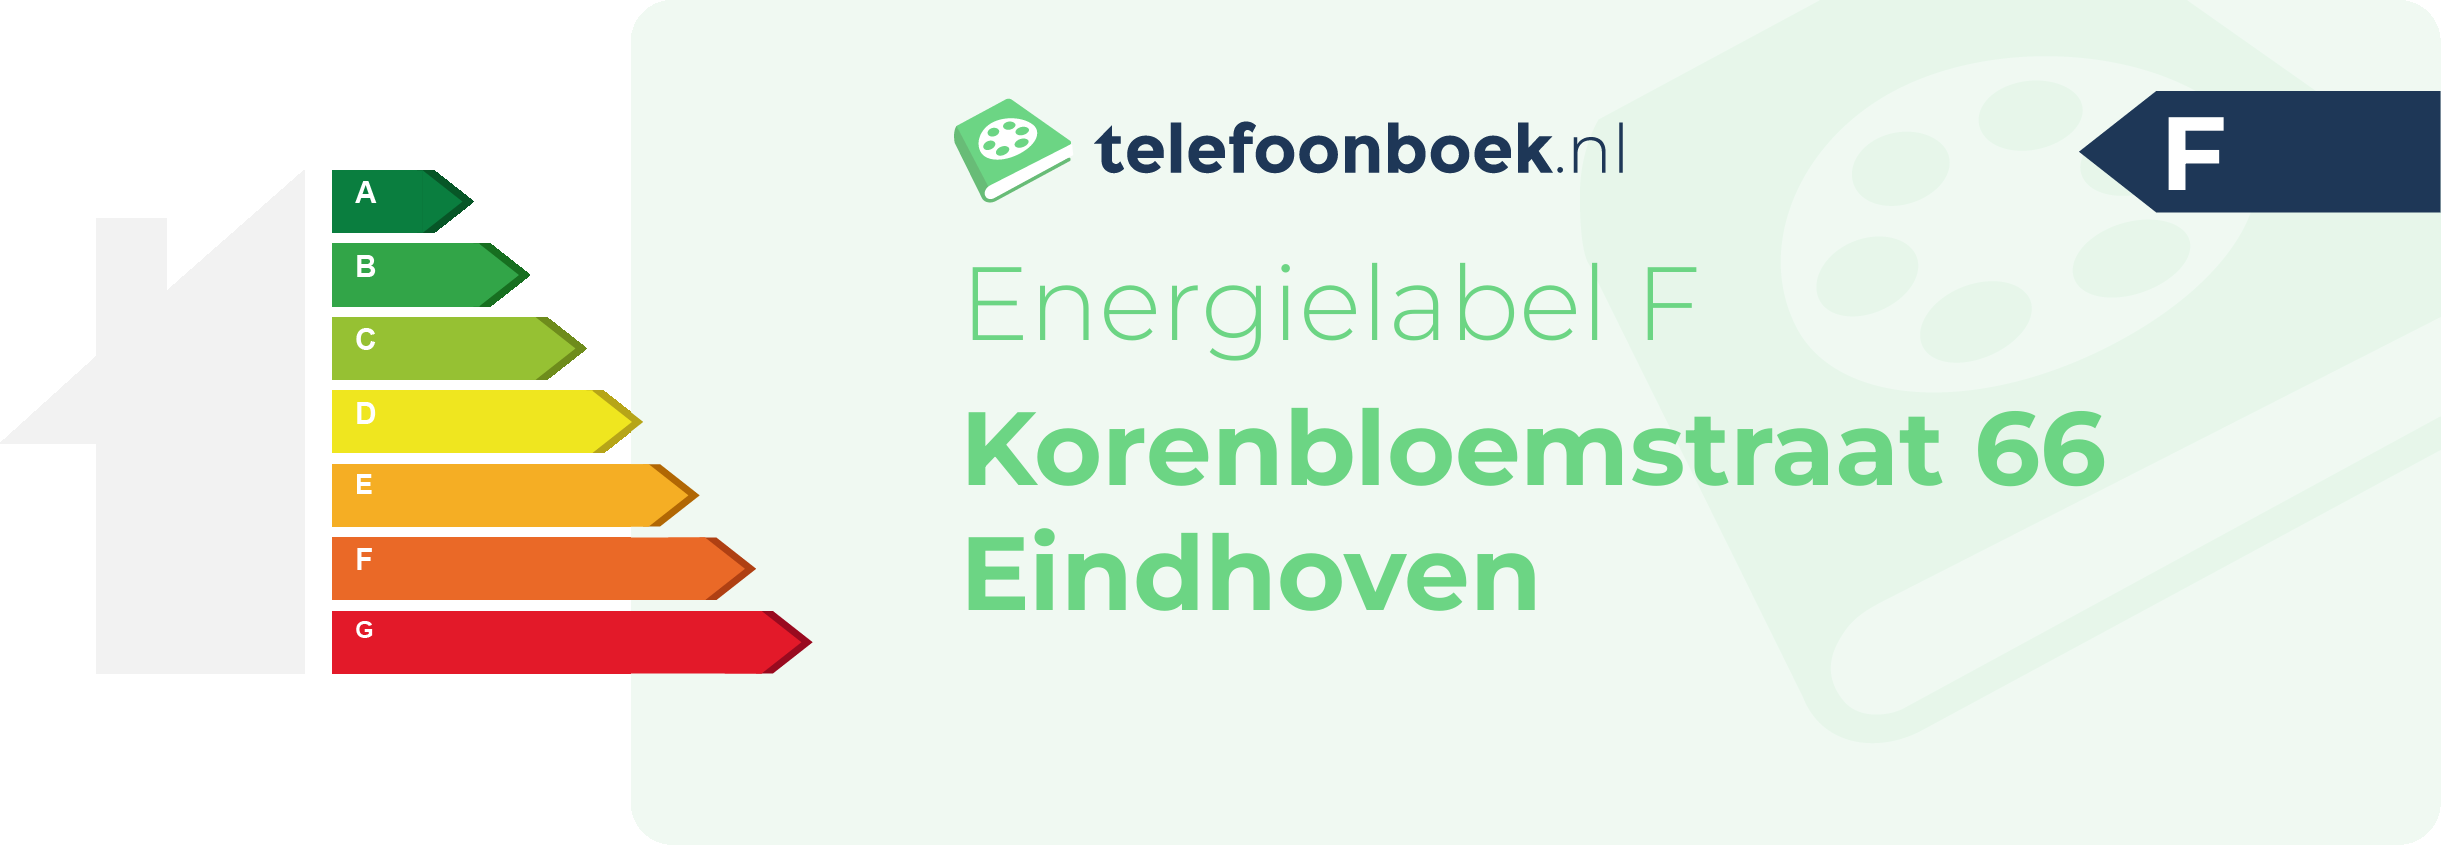 Energielabel Korenbloemstraat 66 Eindhoven